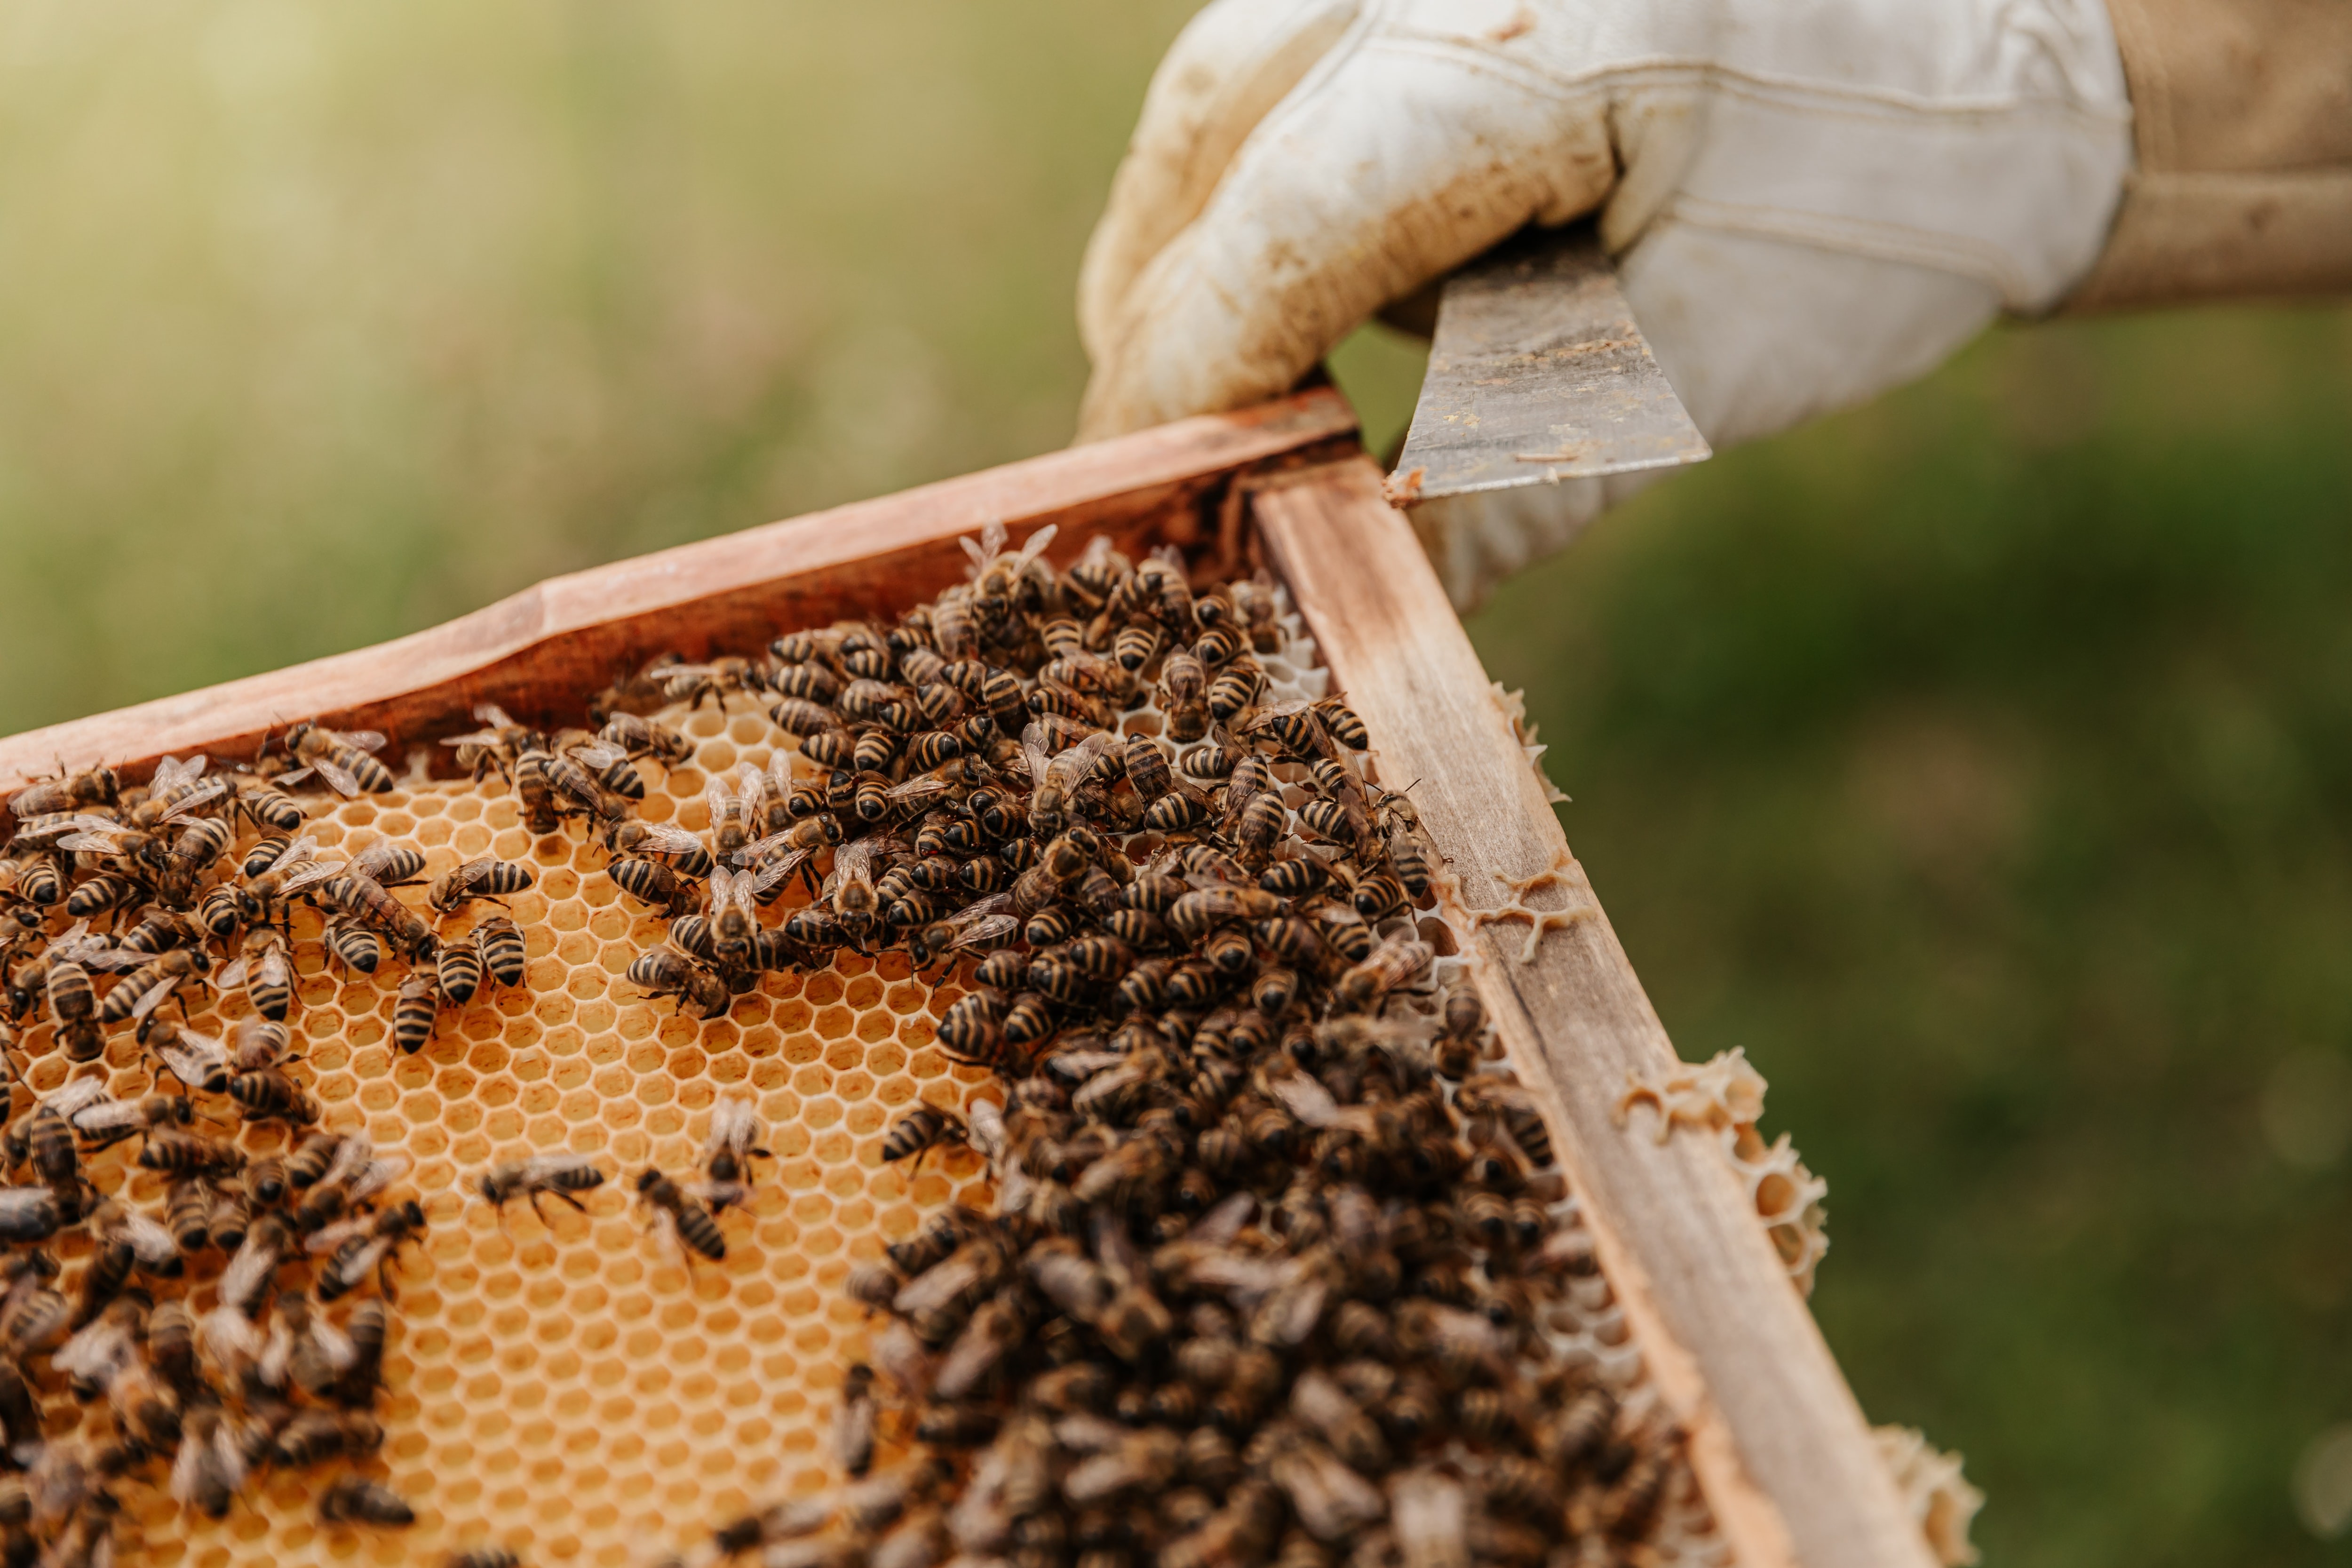 A importância das abelhas vai além da produção de alimentos para os humanos. (Foto: Bianca Ackermann/Unsplash)